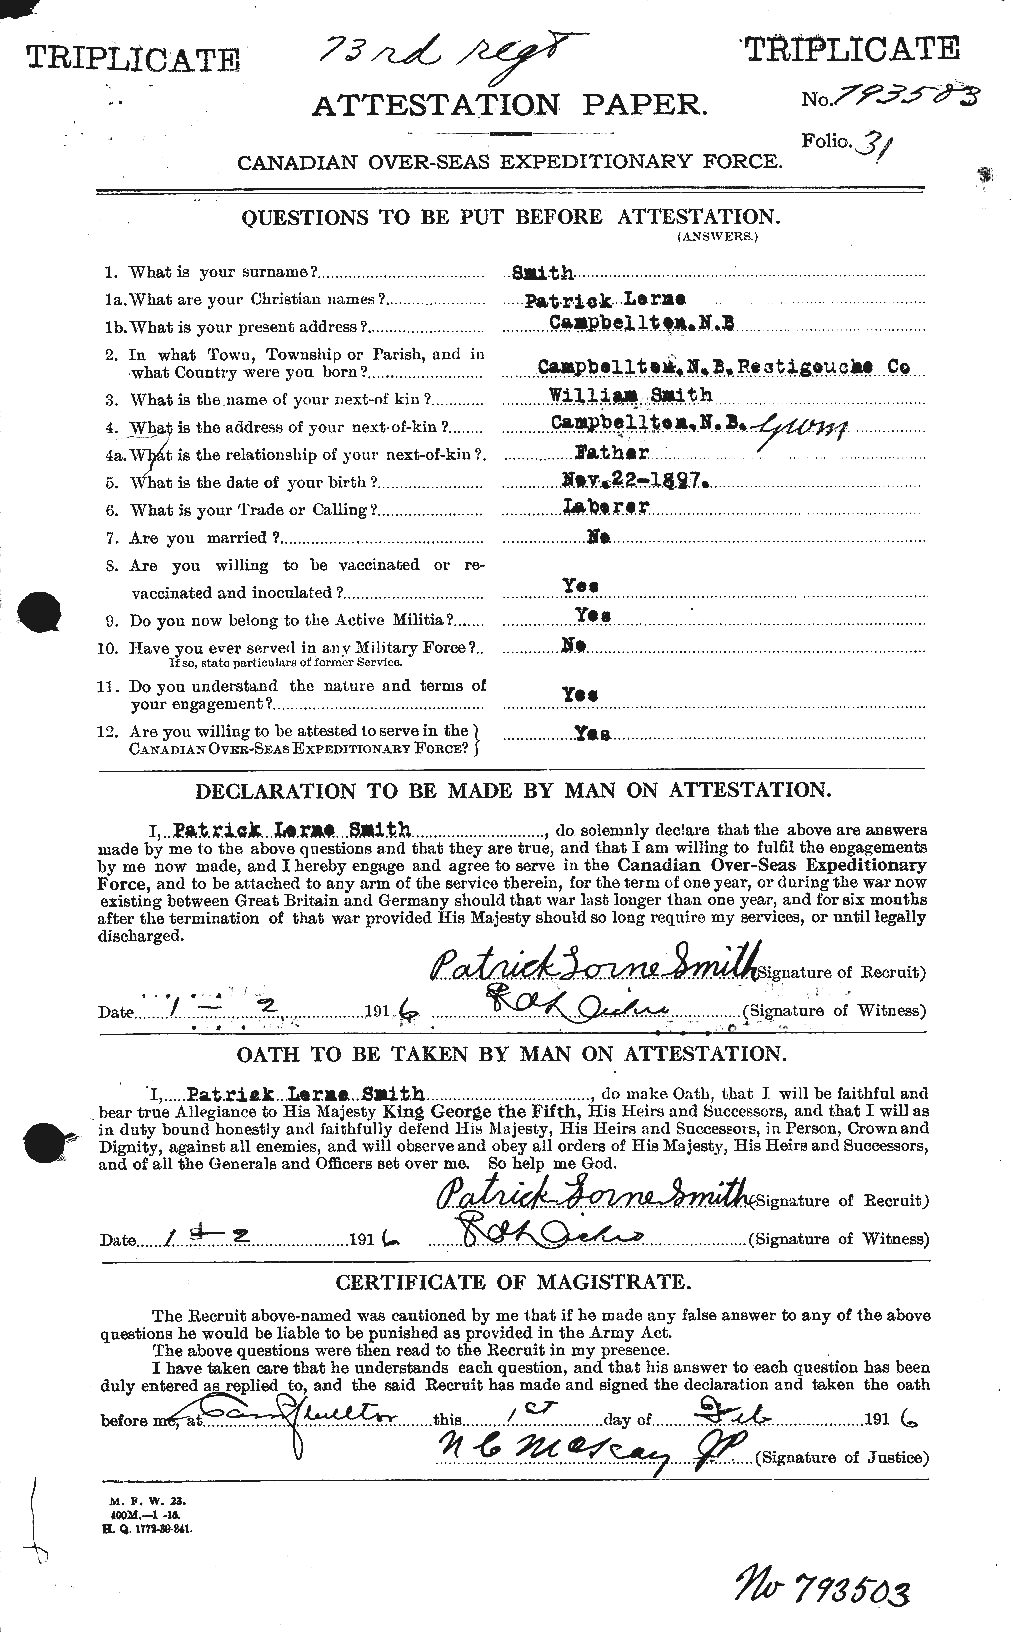 Dossiers du Personnel de la Première Guerre mondiale - CEC 622136a